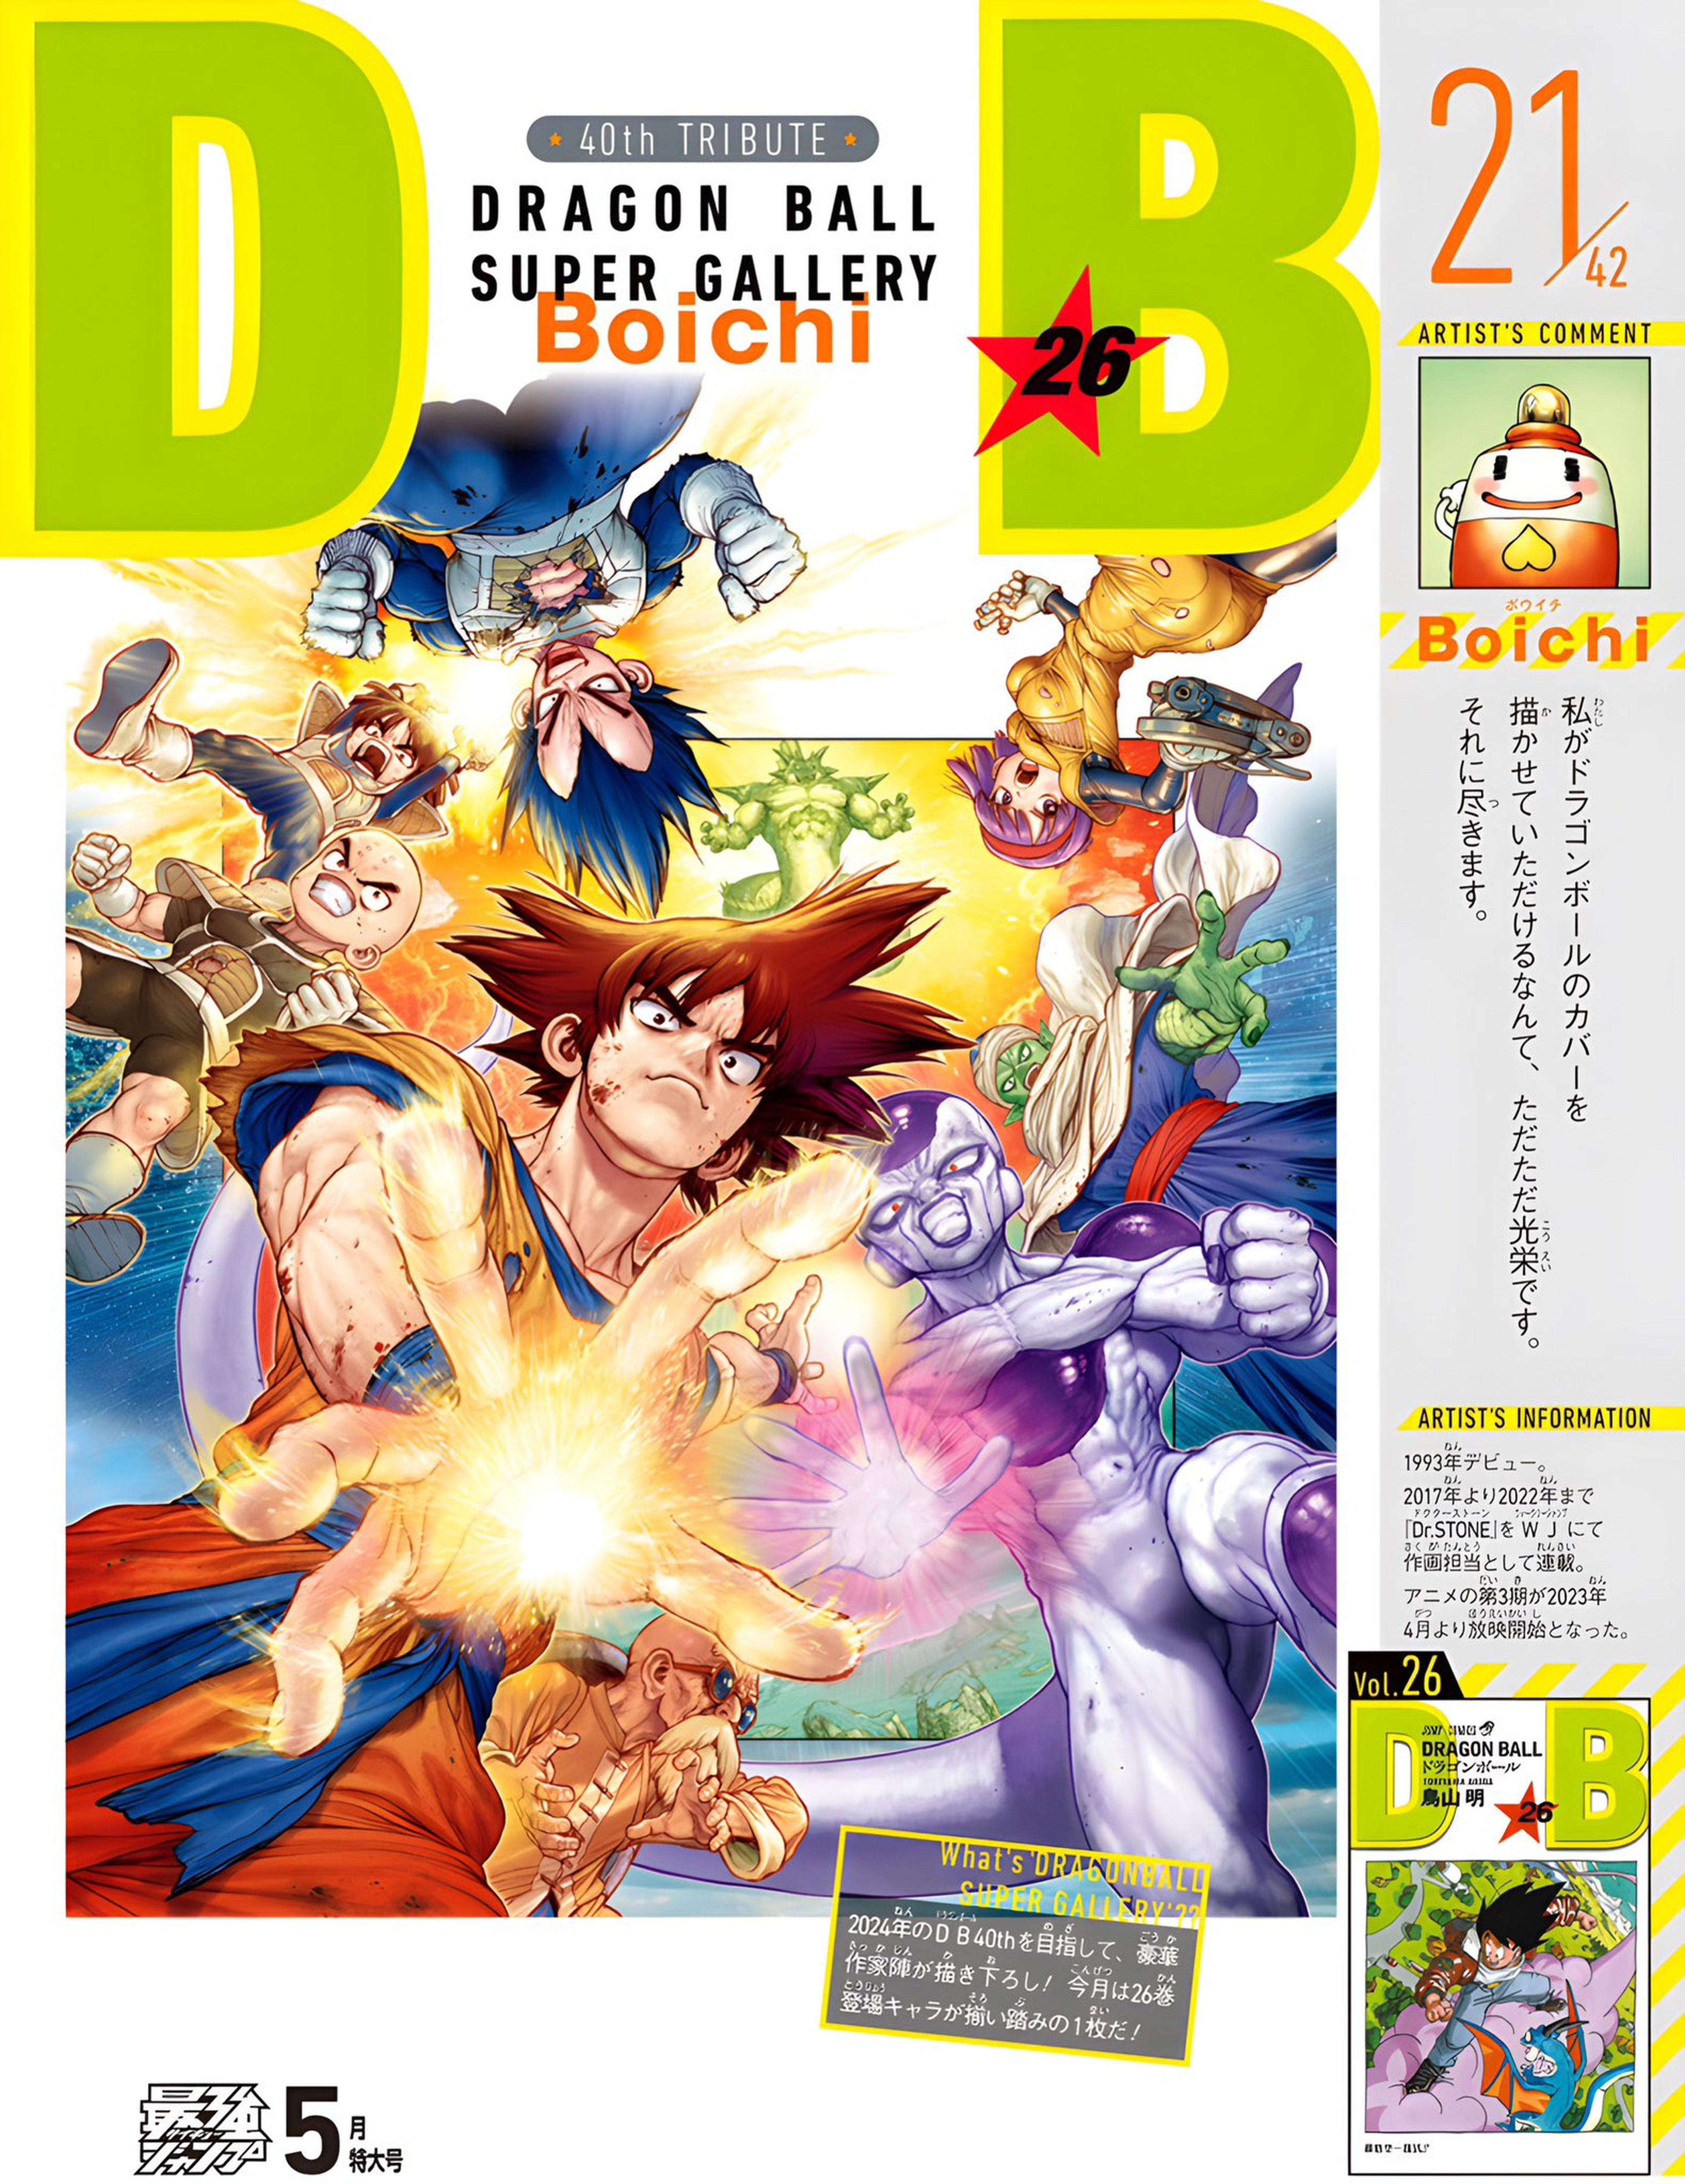 Dragon Ball - Boichi, autor de Dr. Stone, redibuja con polémica una portada de la serie manga de Akira Toriyama